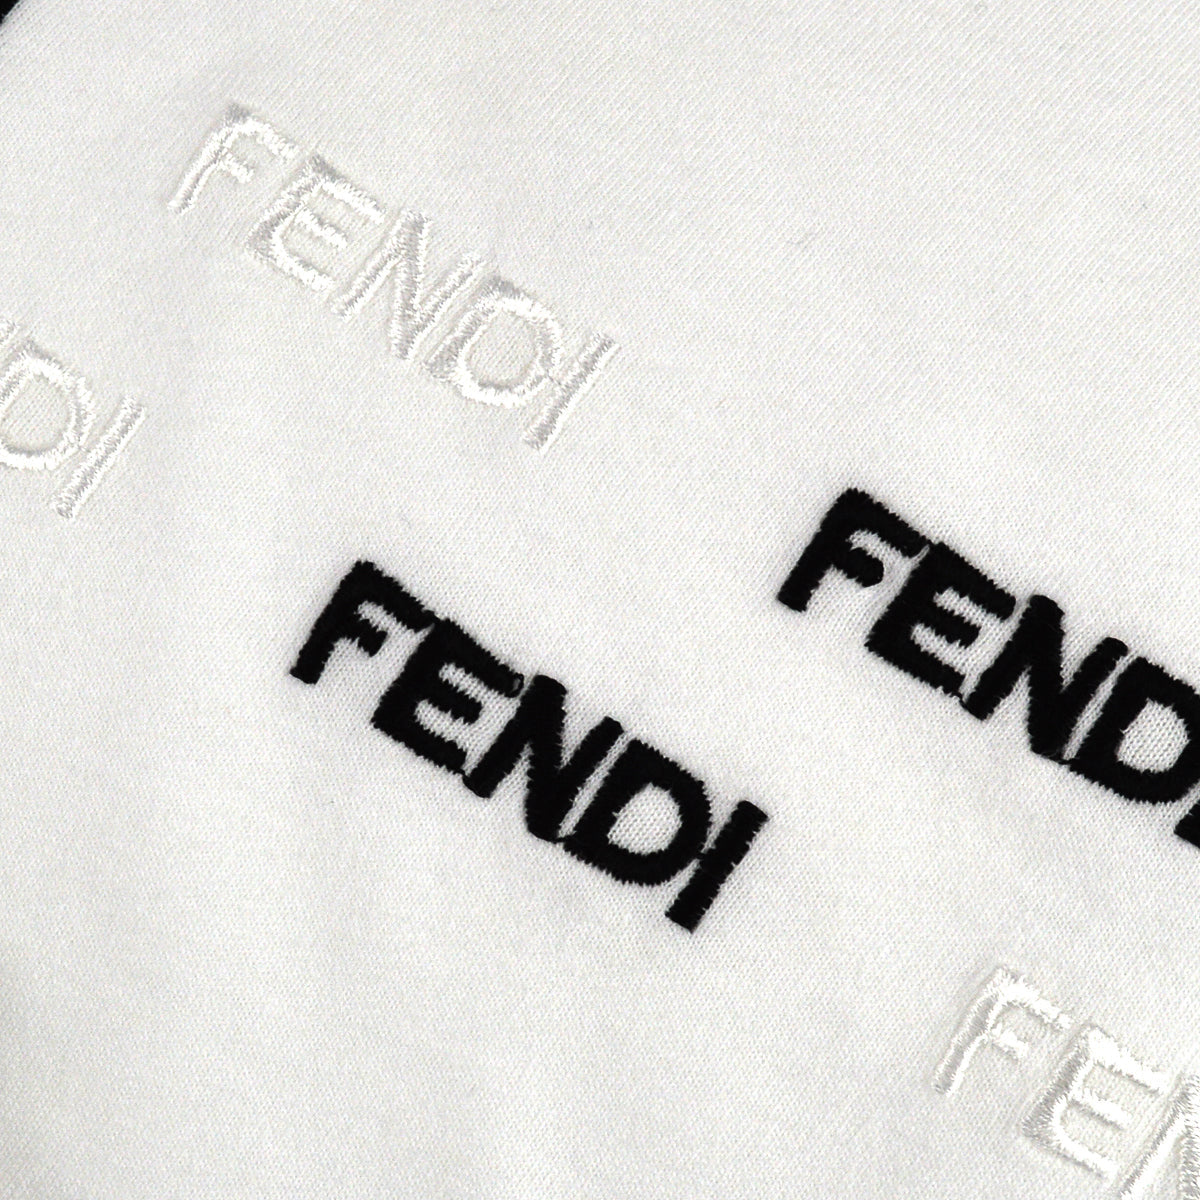 Fendi T-shirt White 